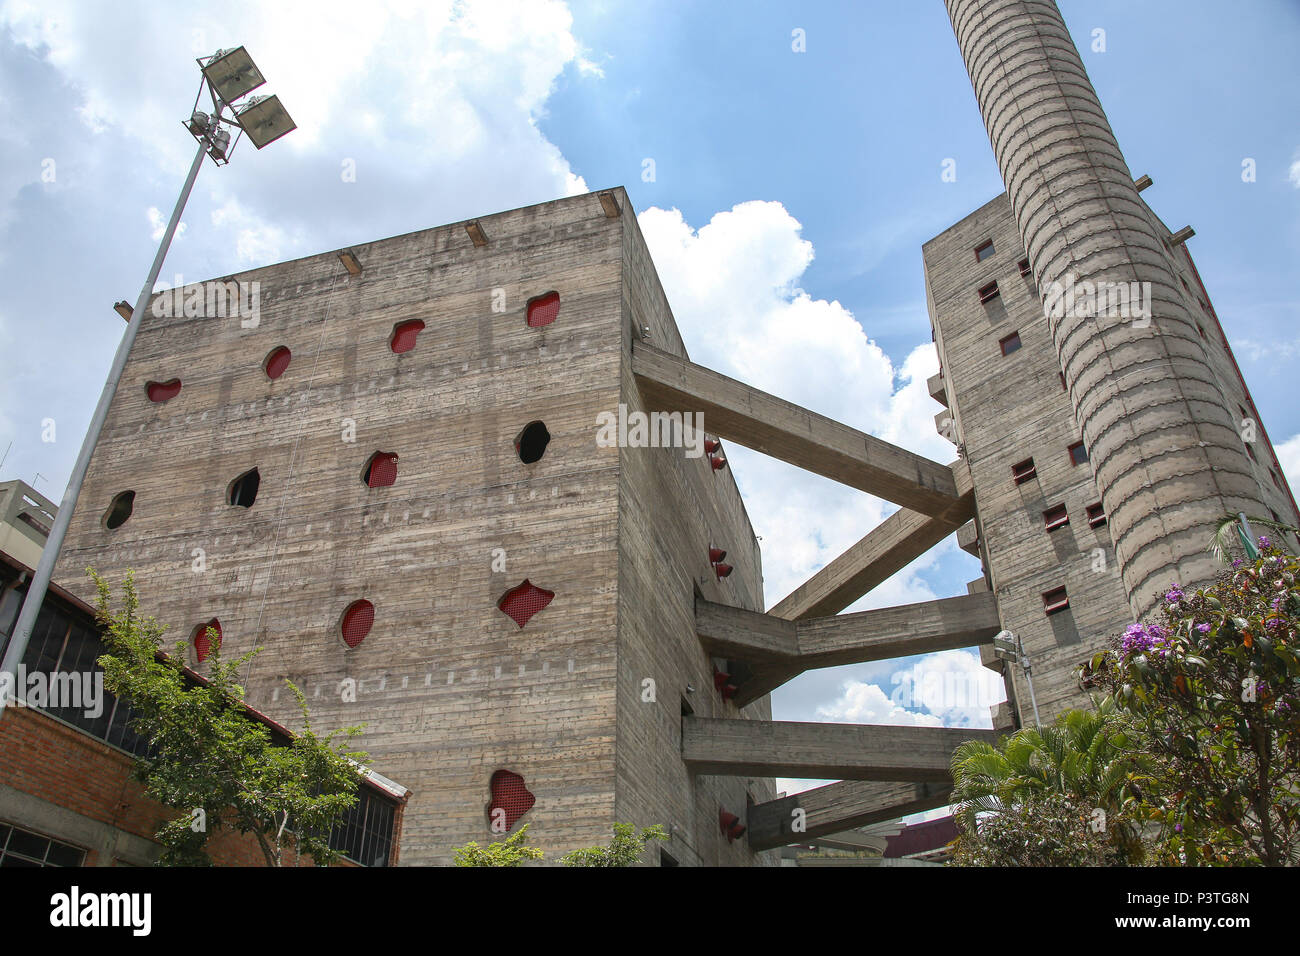 SÃO PAULO, SP – 05.02.2016: SESC POMPEIA - Passarelas de concreto que  interligam as duas torres (quadra e vestiários) do edifício SESC Pompéia. Construída a partir de uma antiga fábrica de tambores, na região da zona oeste de São Paulo, foi chamada de  Fábrica da Pompeia. O SESC Pompeia foi projetado pela arquiteta italiana Lina Bo Bardi. A obra começou em 1977 e durou nove anos. A primeira etapa foi inaugurada em 1982 e em1986 o bloco esportivo foi aberto ao público. (Foto: Bruna Marques / Fotoarena) Stock Photo